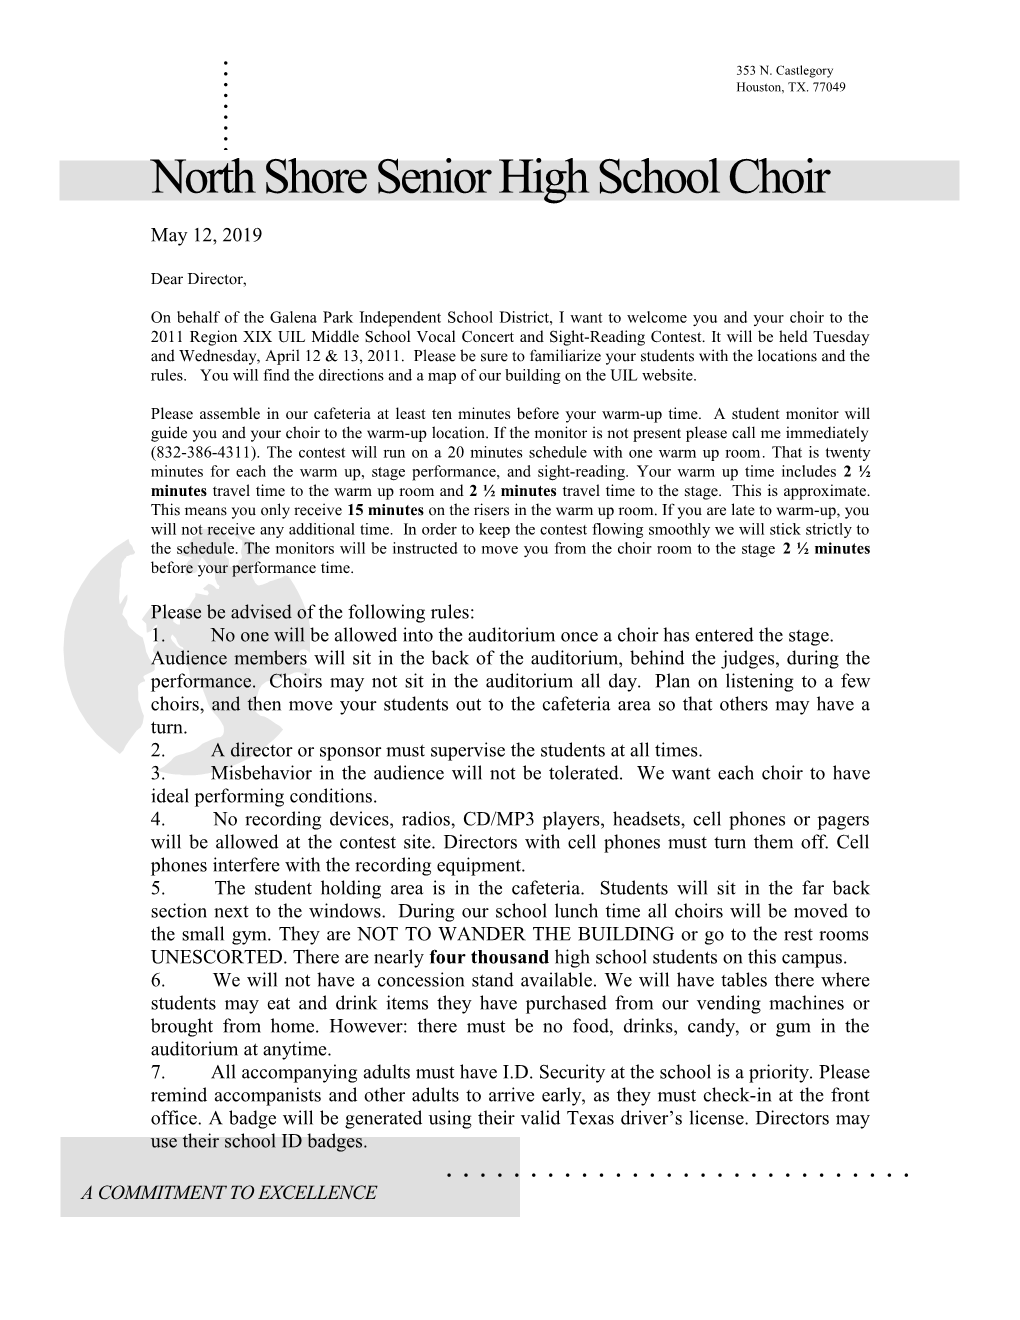 North Shore Senior High School Choir